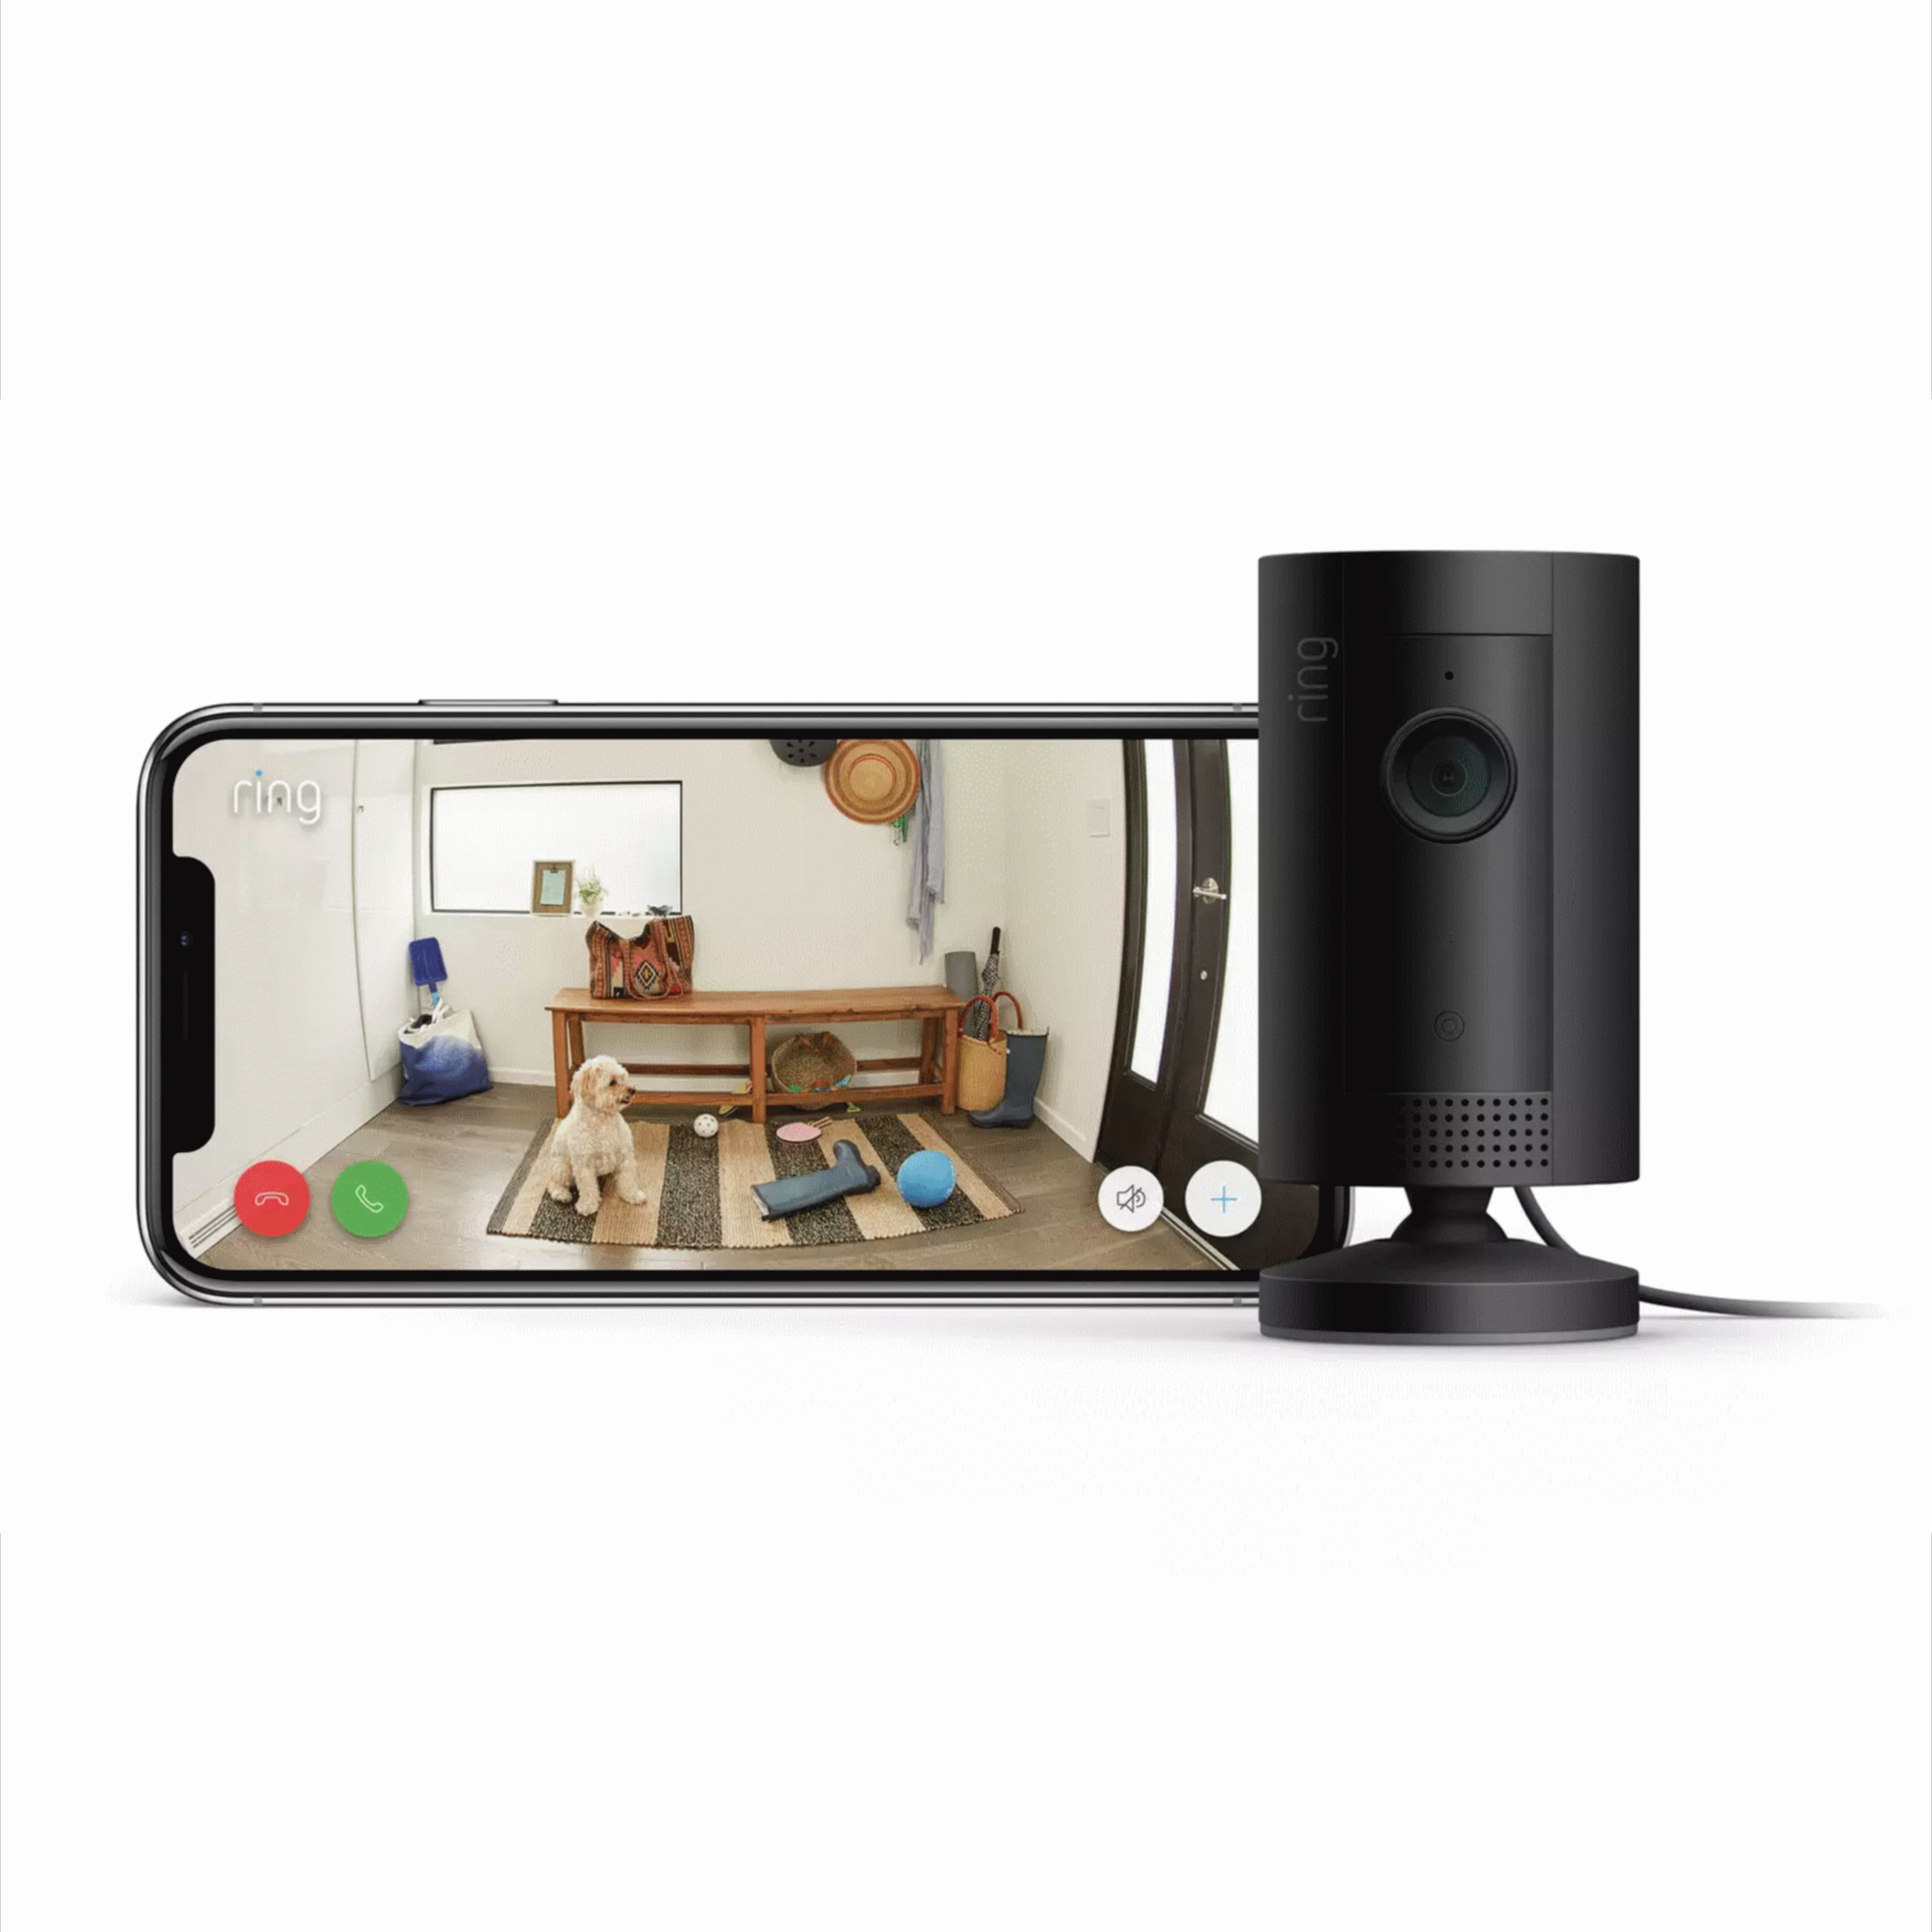 Ring Wired Indoor Tilt adjustable Smart camera - Black